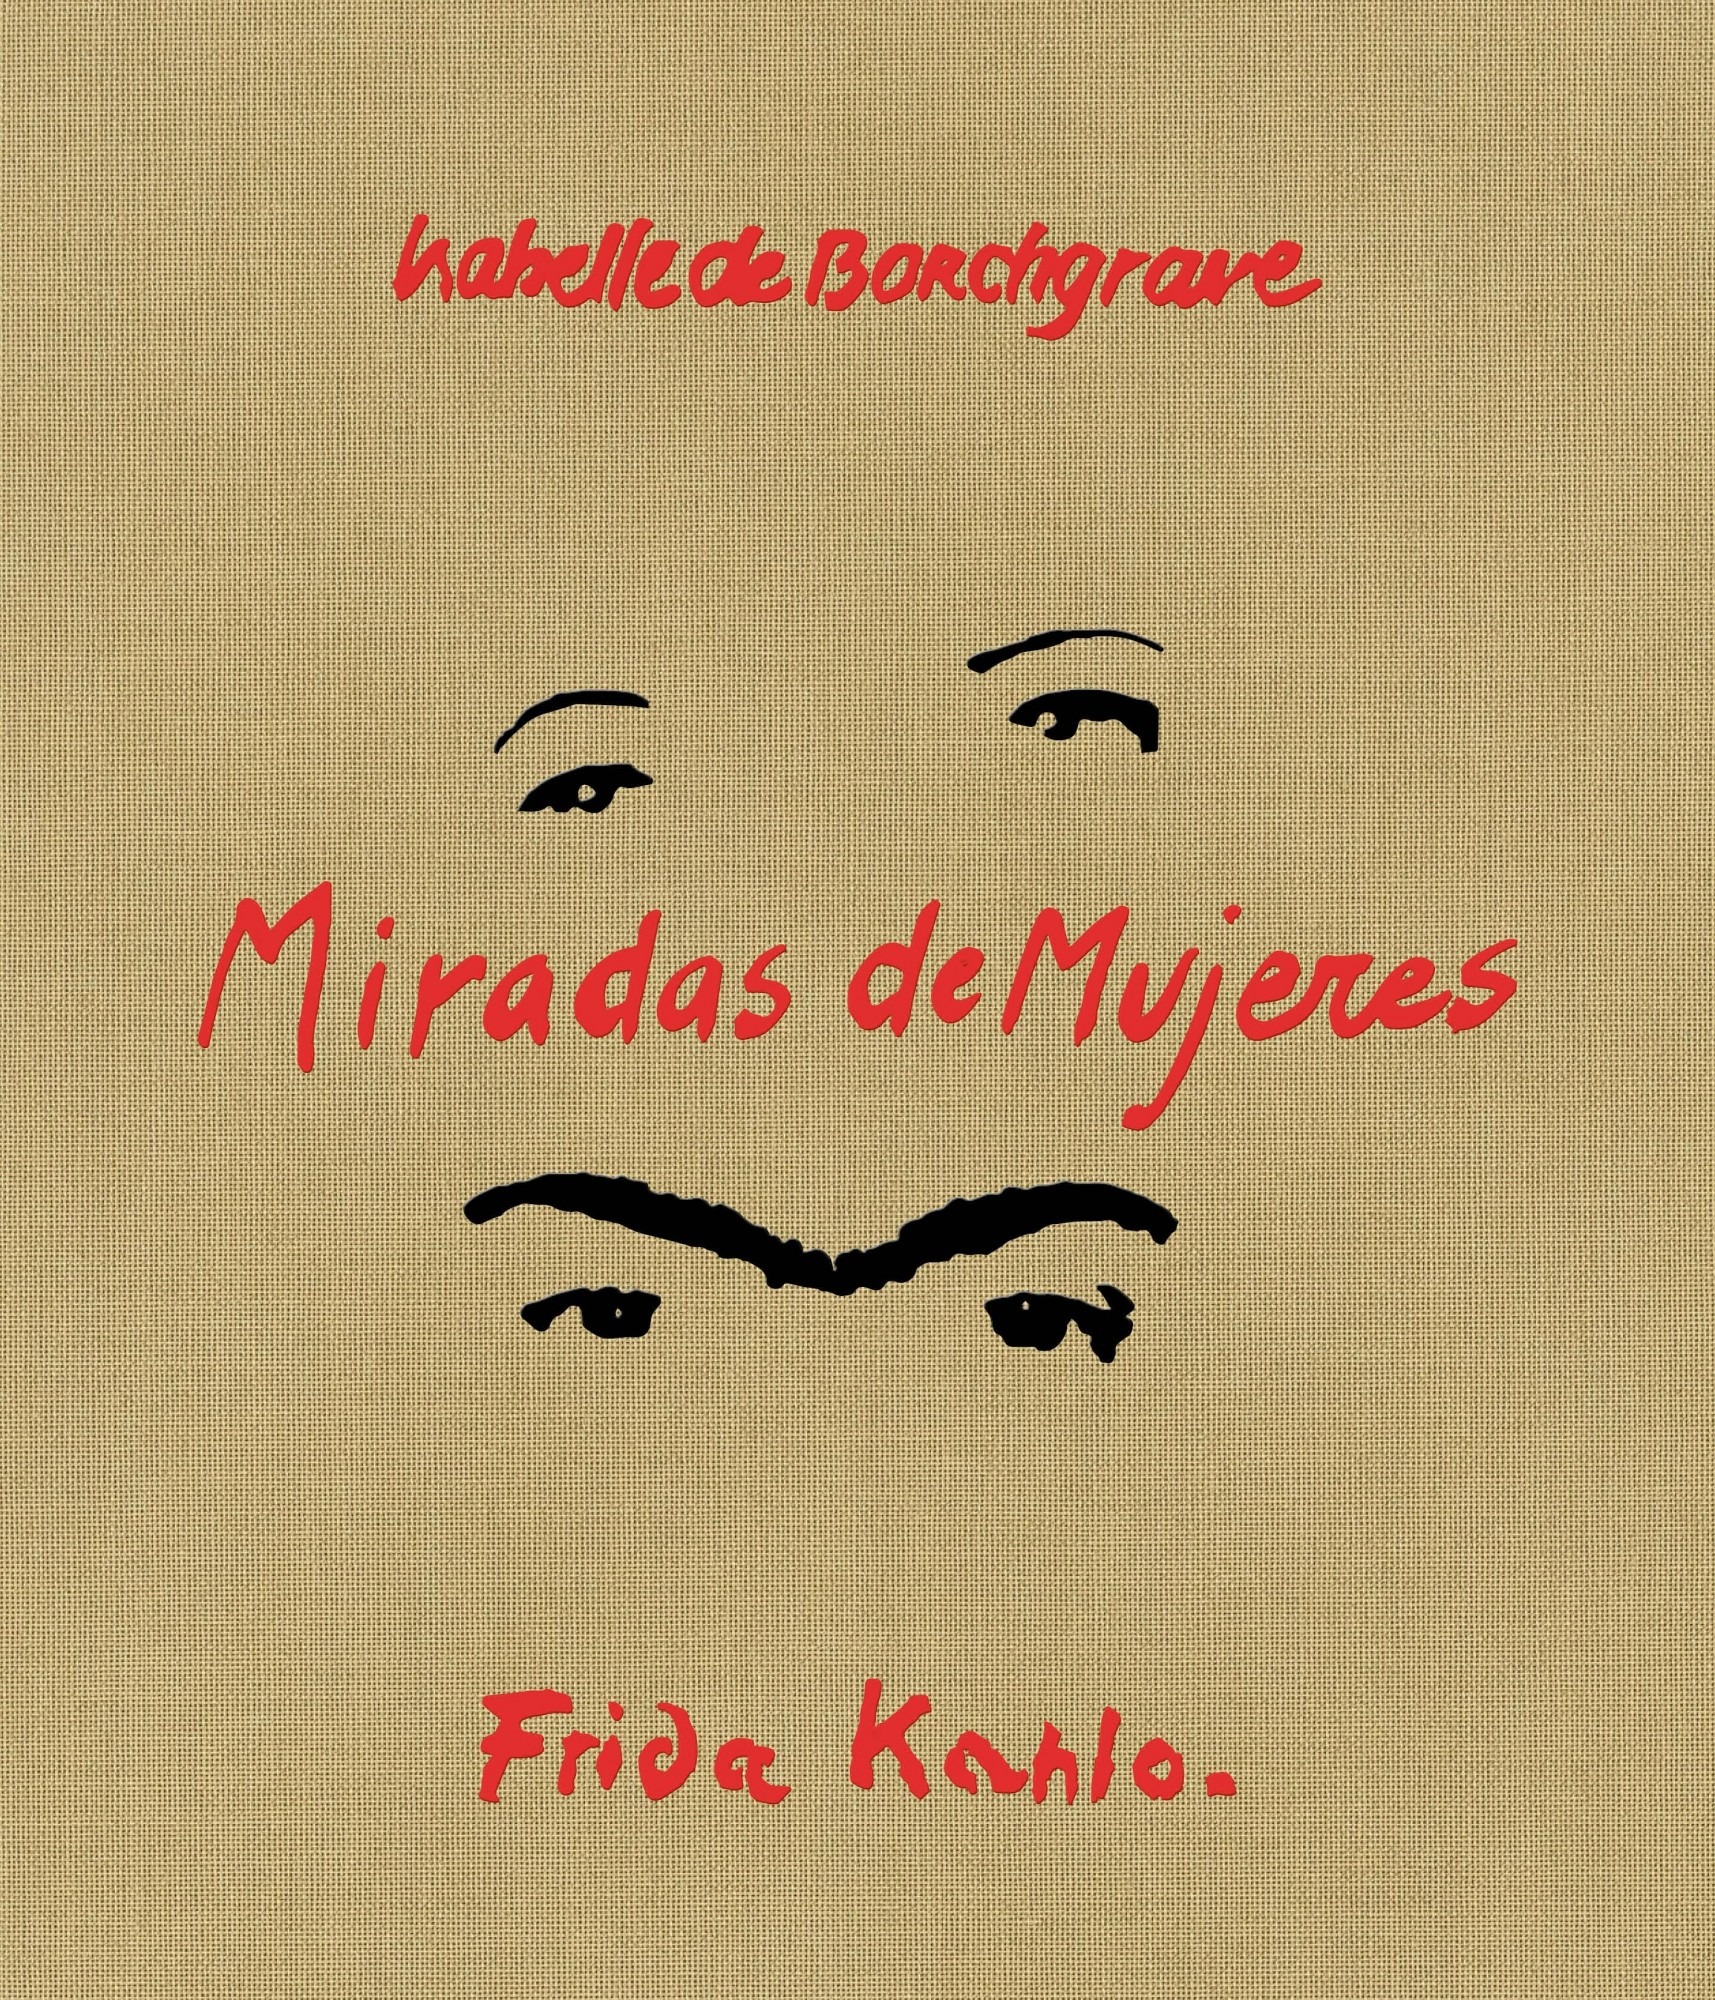 Miradas de Mujeres - Isabelle de Borchgrave & Frida Kahlo